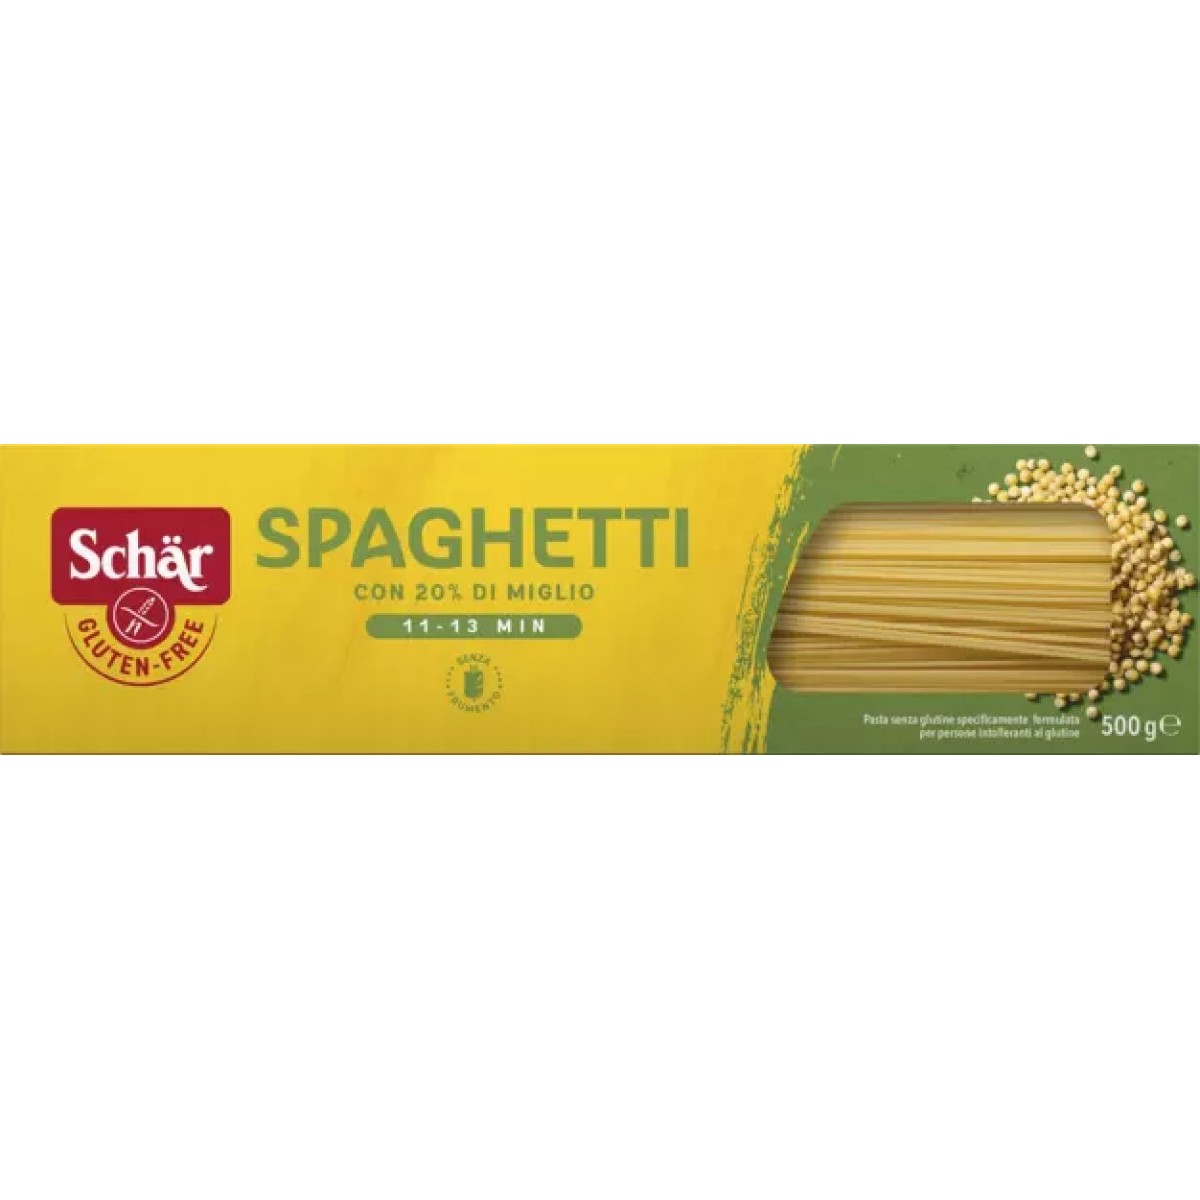 Schar - Spaghetti senza glutine con 20% di miglio - 500gr Bottega senza Glutine